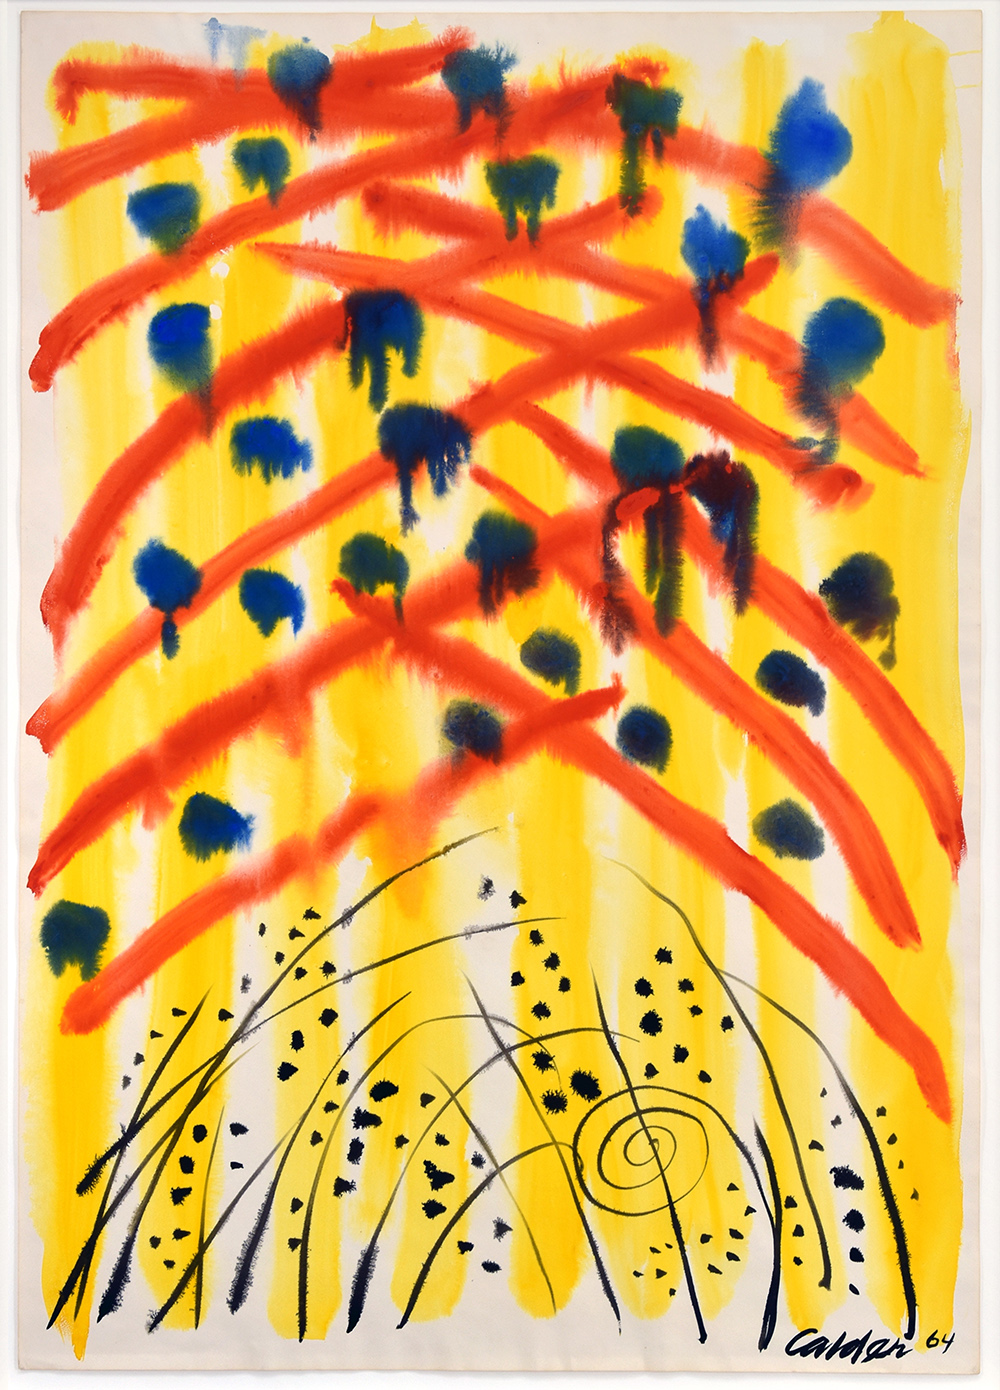 Alexander Calder, Untitled, 1964